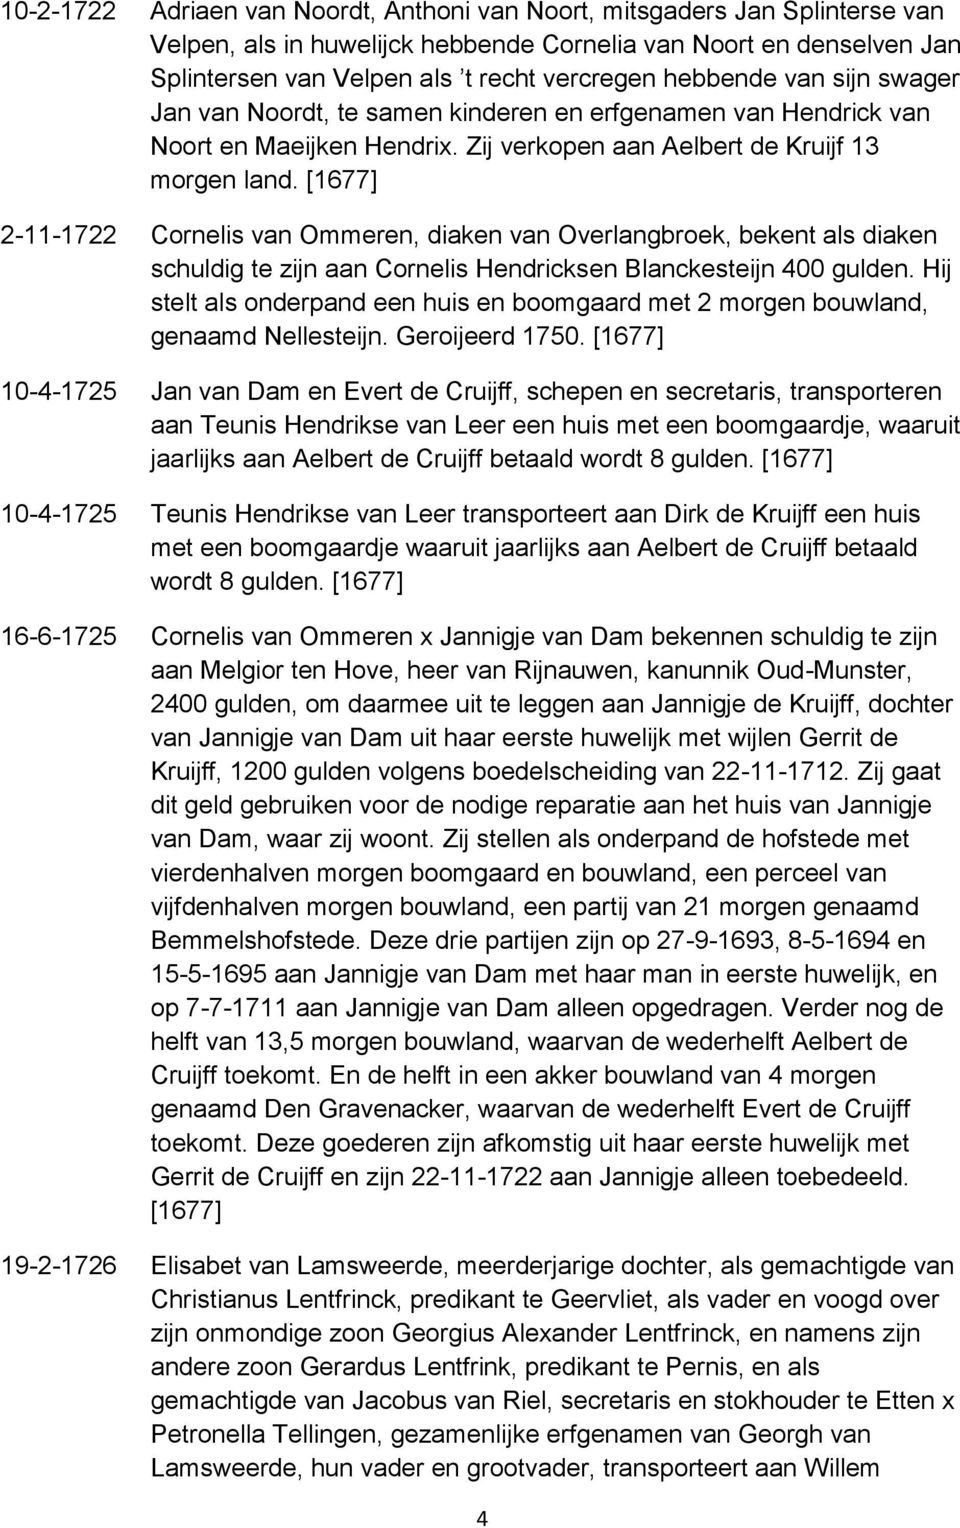 2-11-1722 Cornelis van Ommeren, diaken van Overlangbroek, bekent als diaken schuldig te zijn aan Cornelis Hendricksen Blanckesteijn 400 gulden.